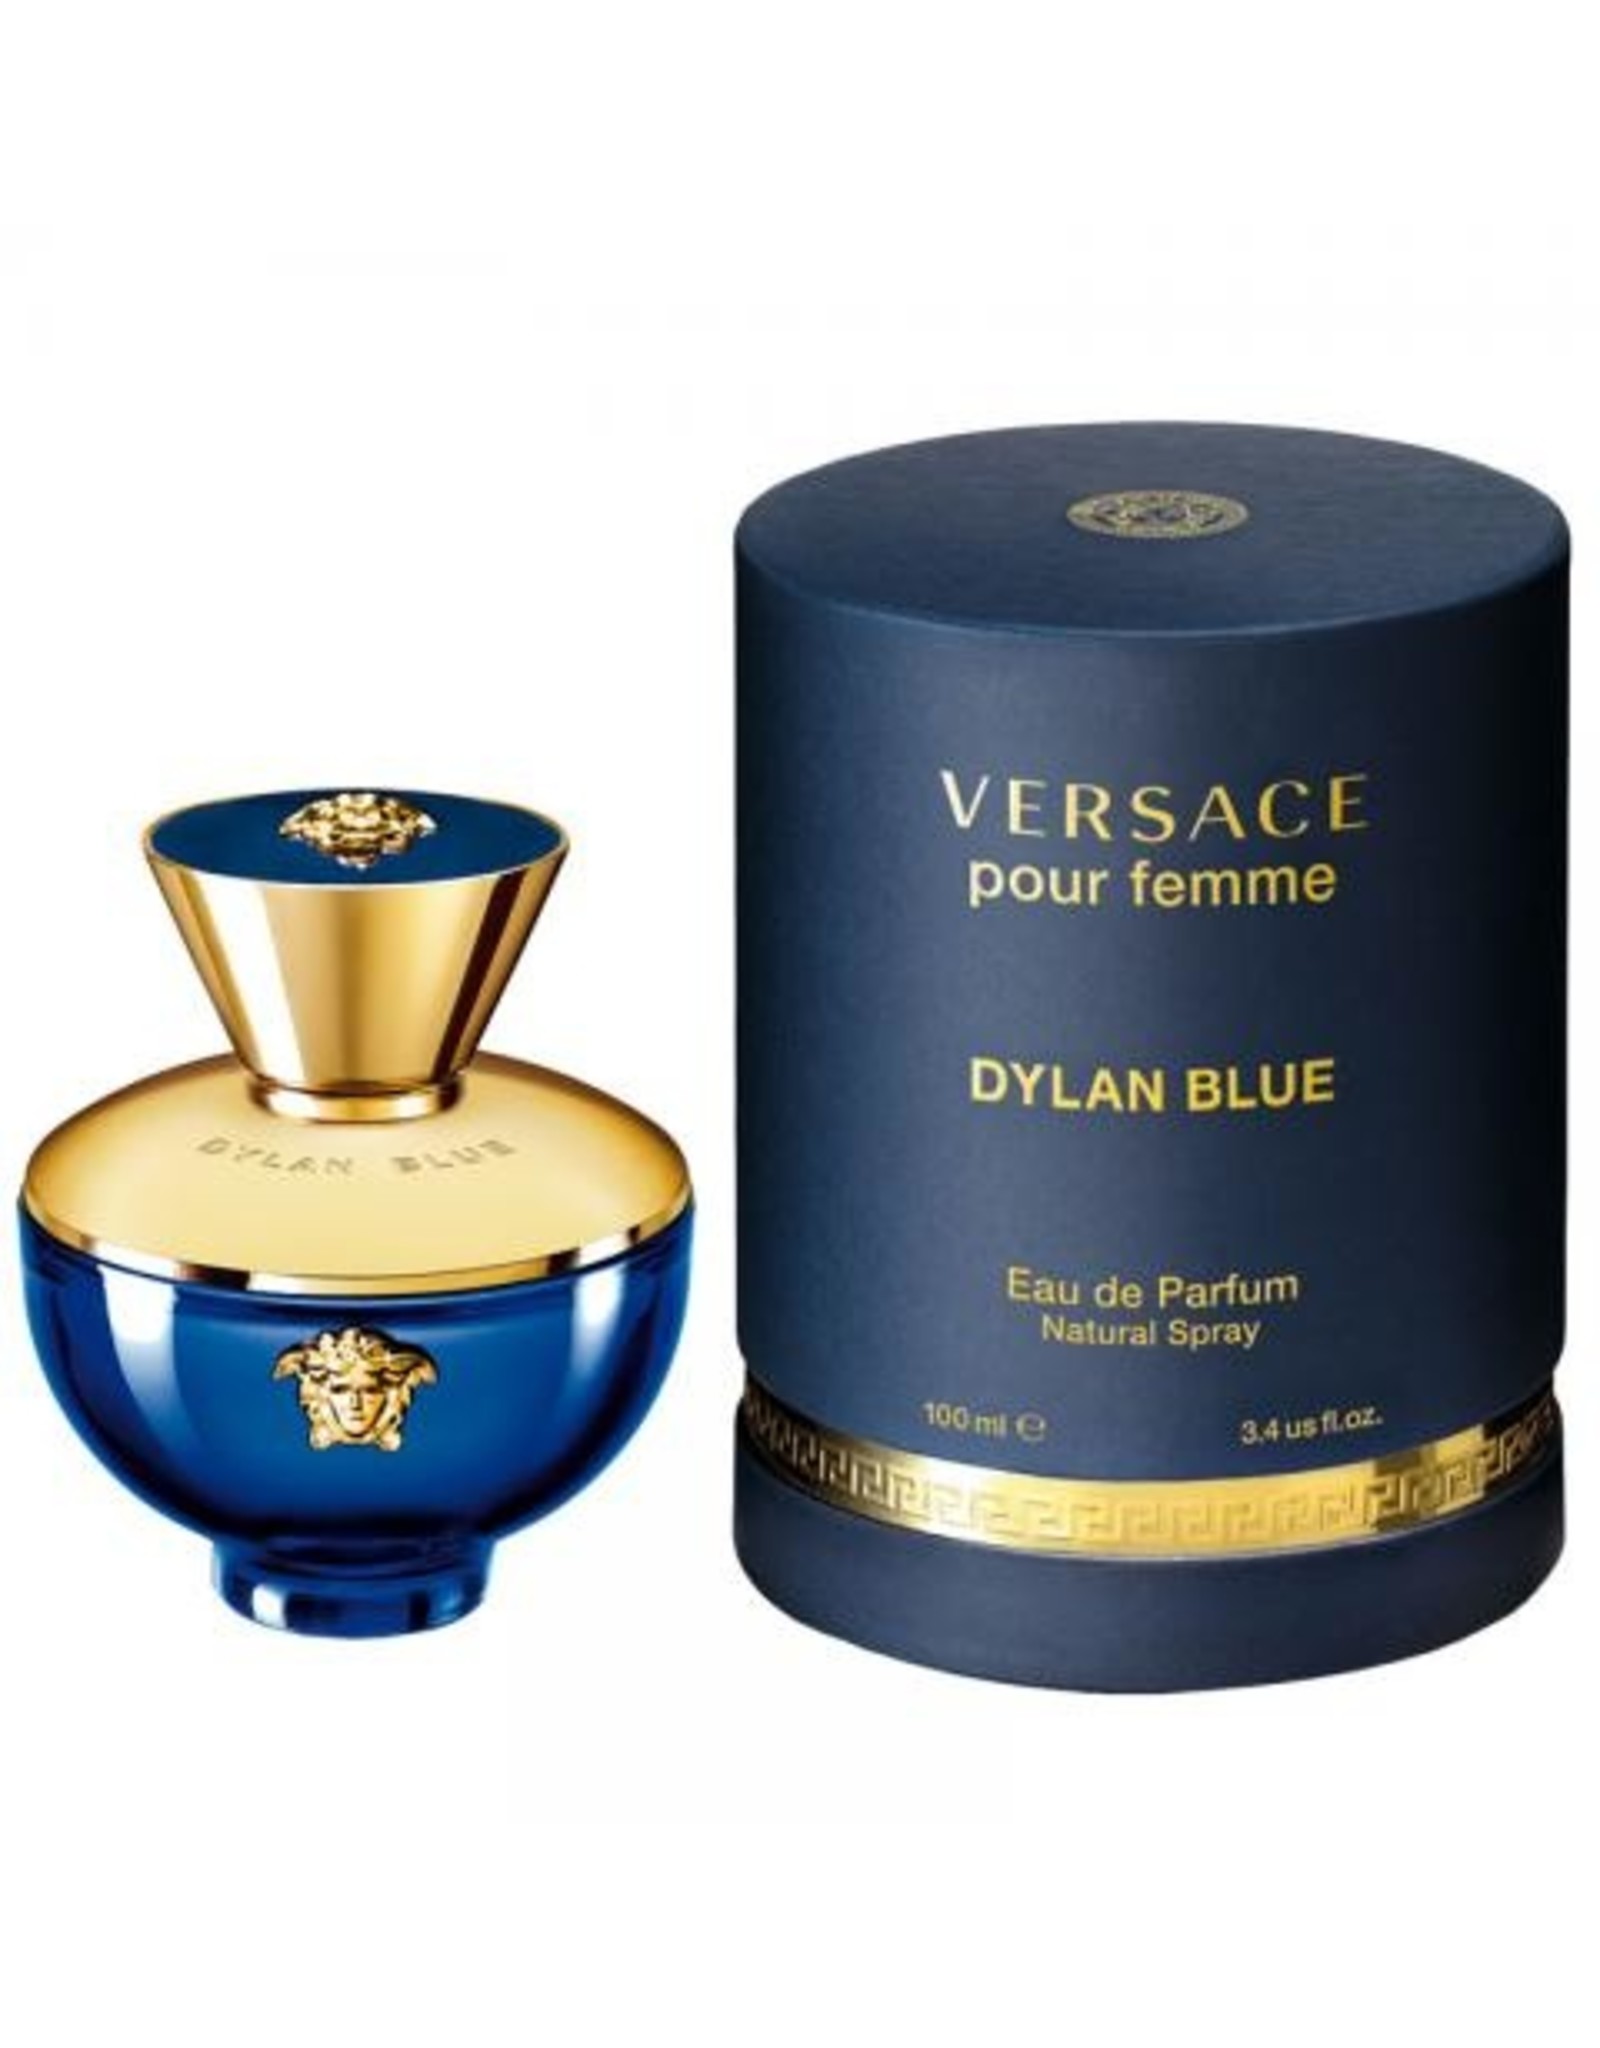 Versace 130693 Dylan Blue 3.4 Oz Eau de Parfum Spray for sale online